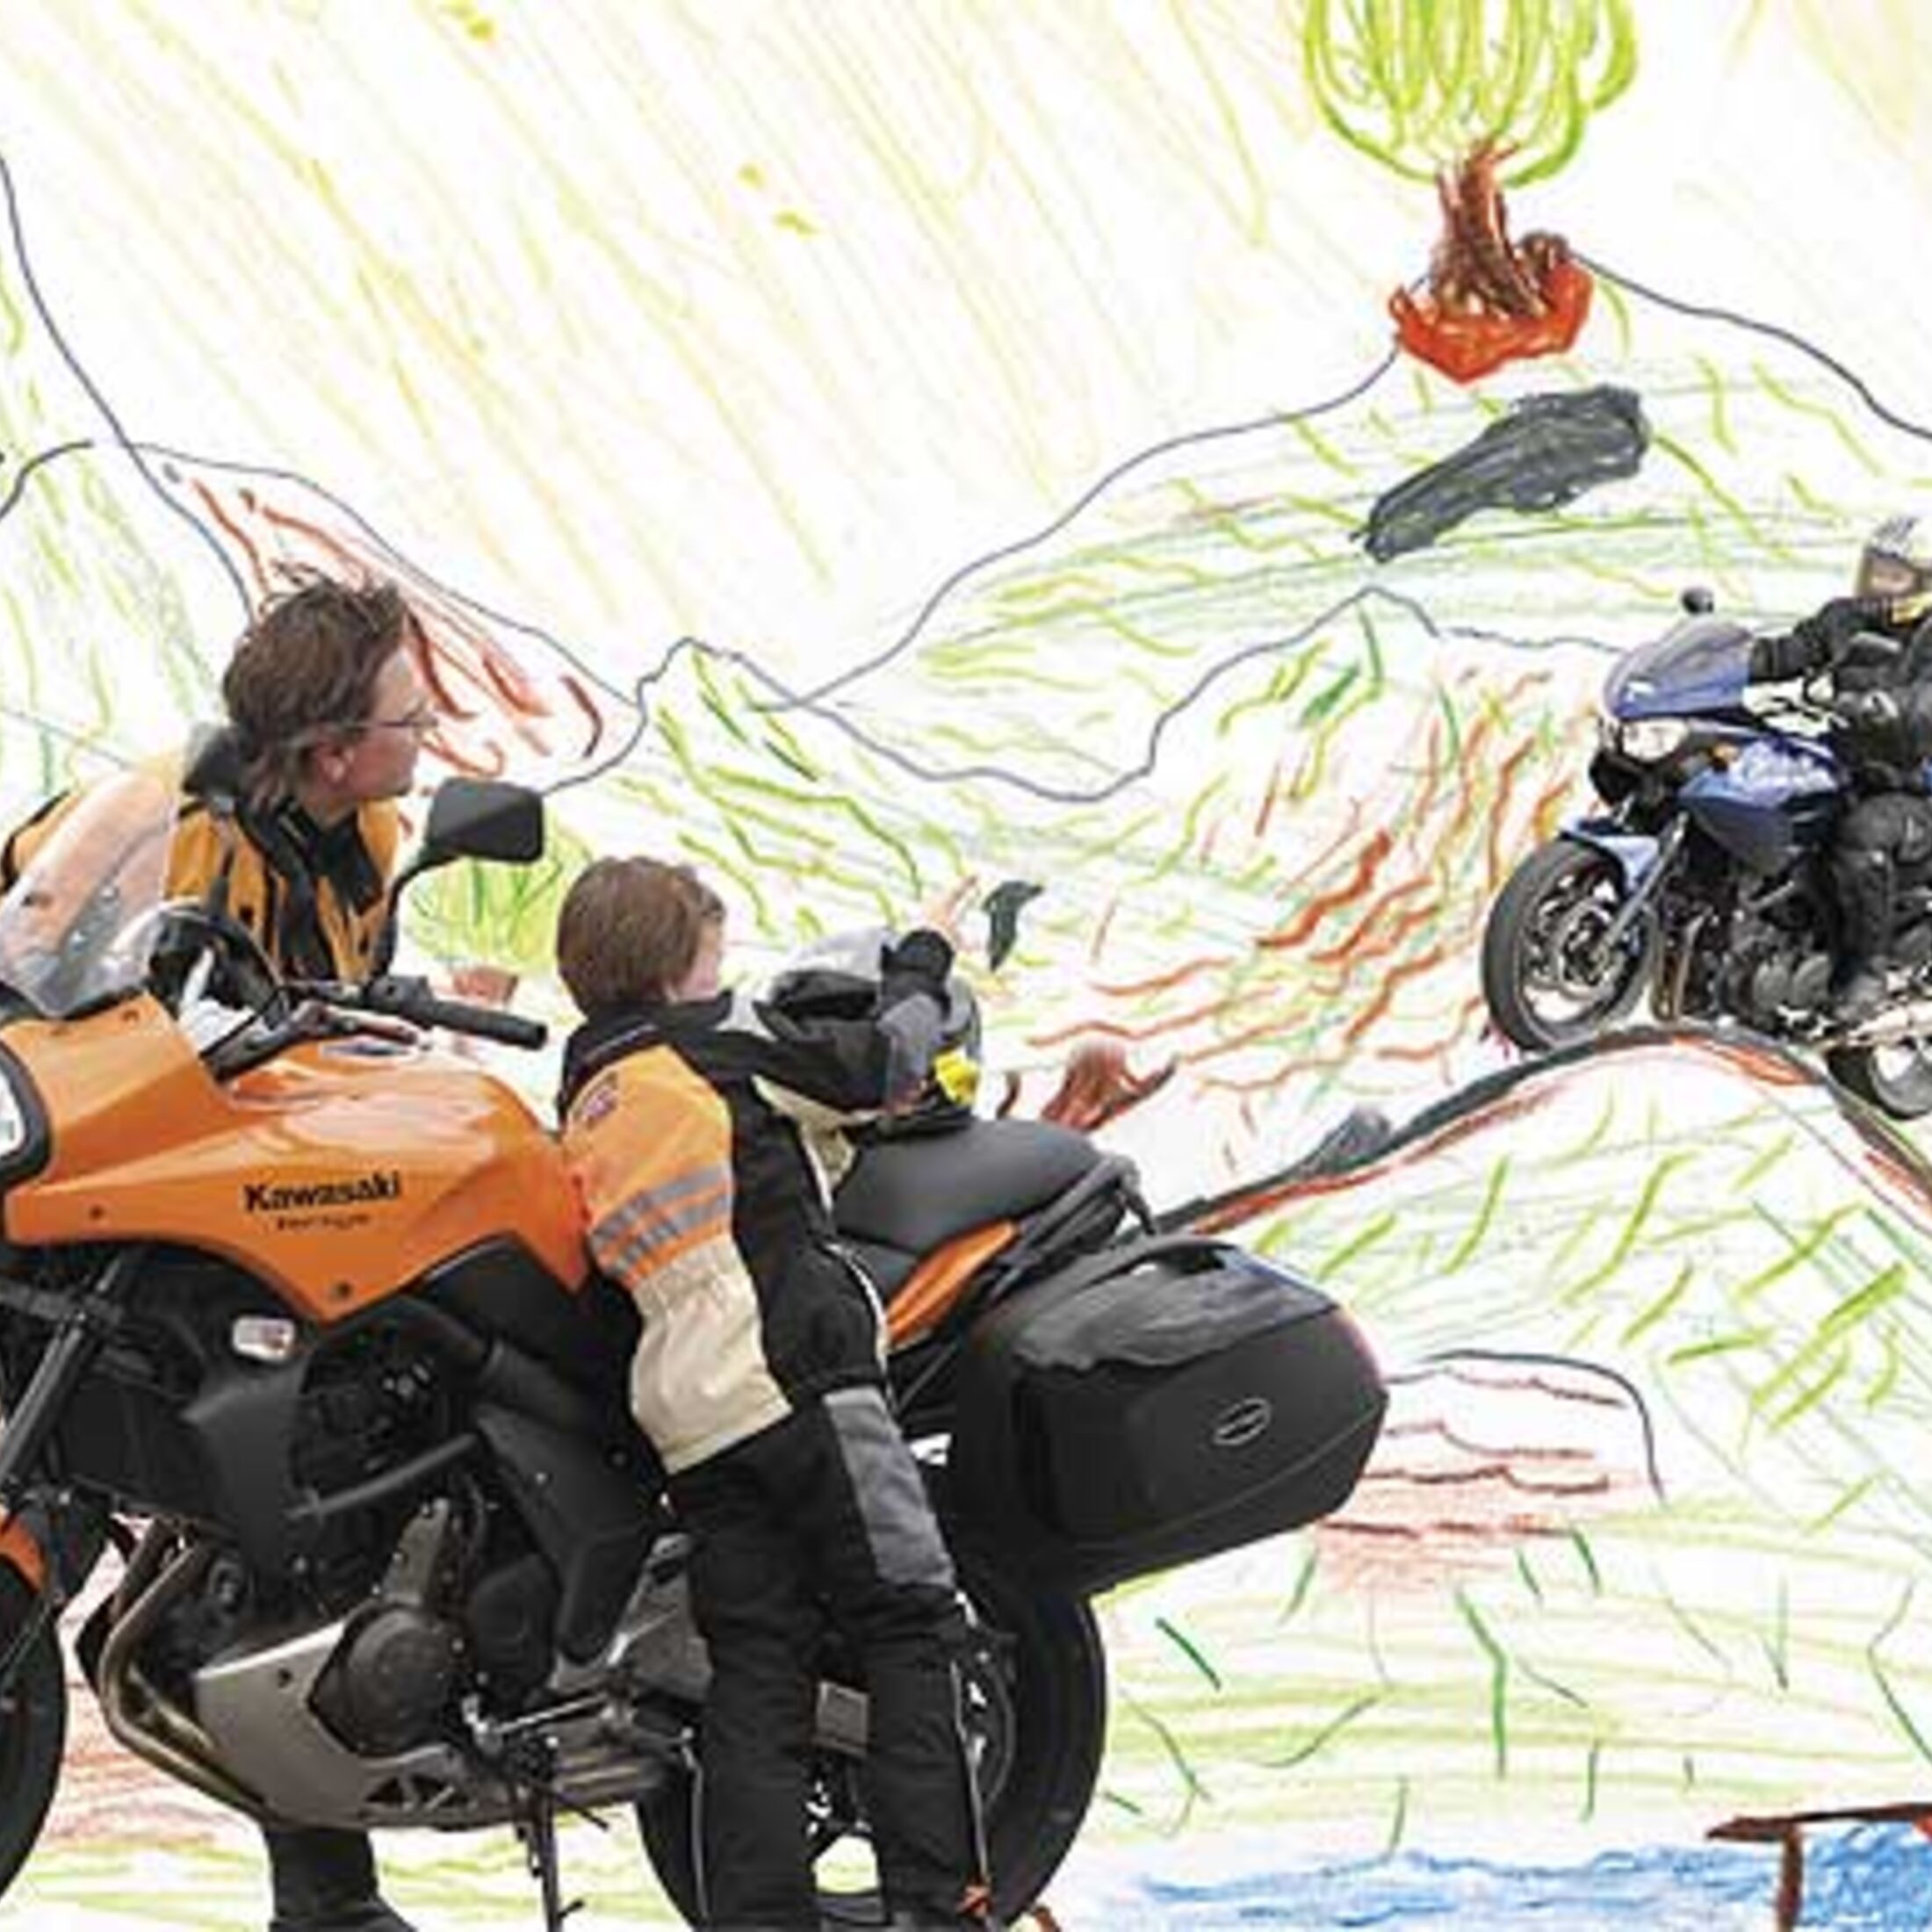 Ab wann dürfen Kinder auf dem Motorrad mitfahren? Schnell unterwegs